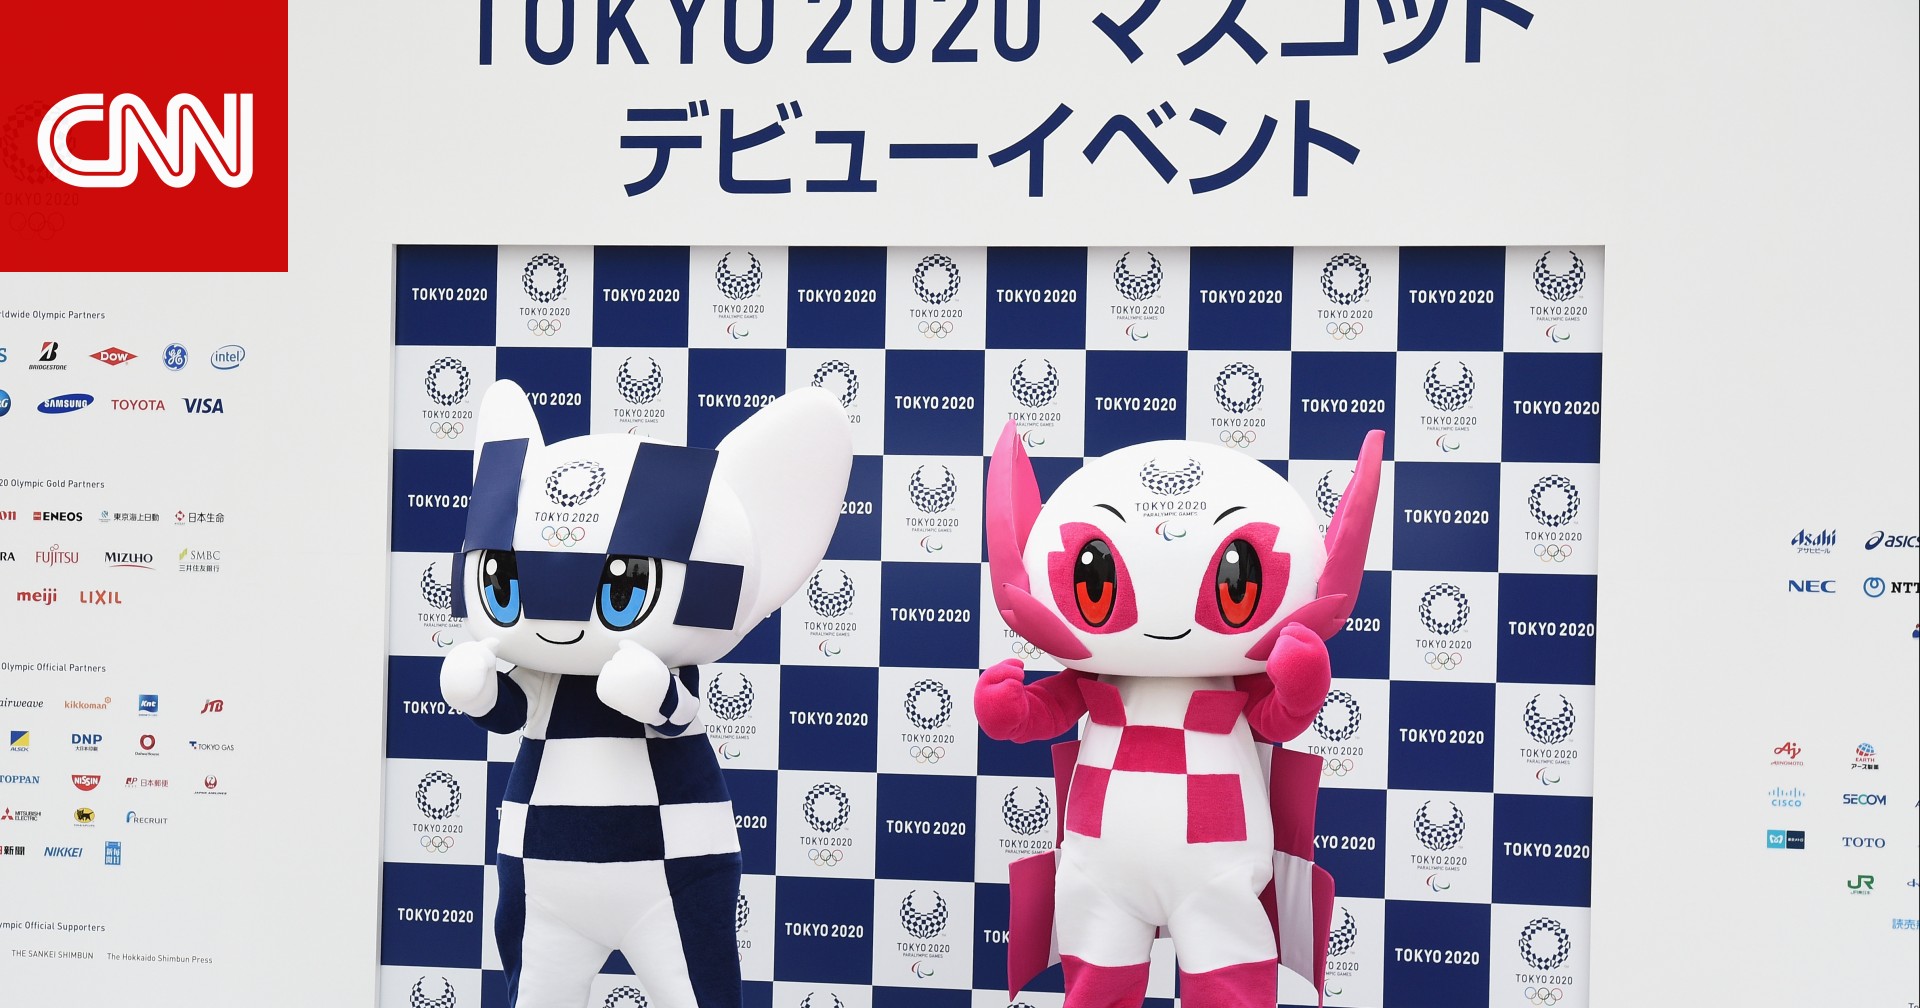 اللجنة المنظمة للأولمبياد تكشف تكلفة دورة ألعاب طوكيو 2020.. إليكم ما هي